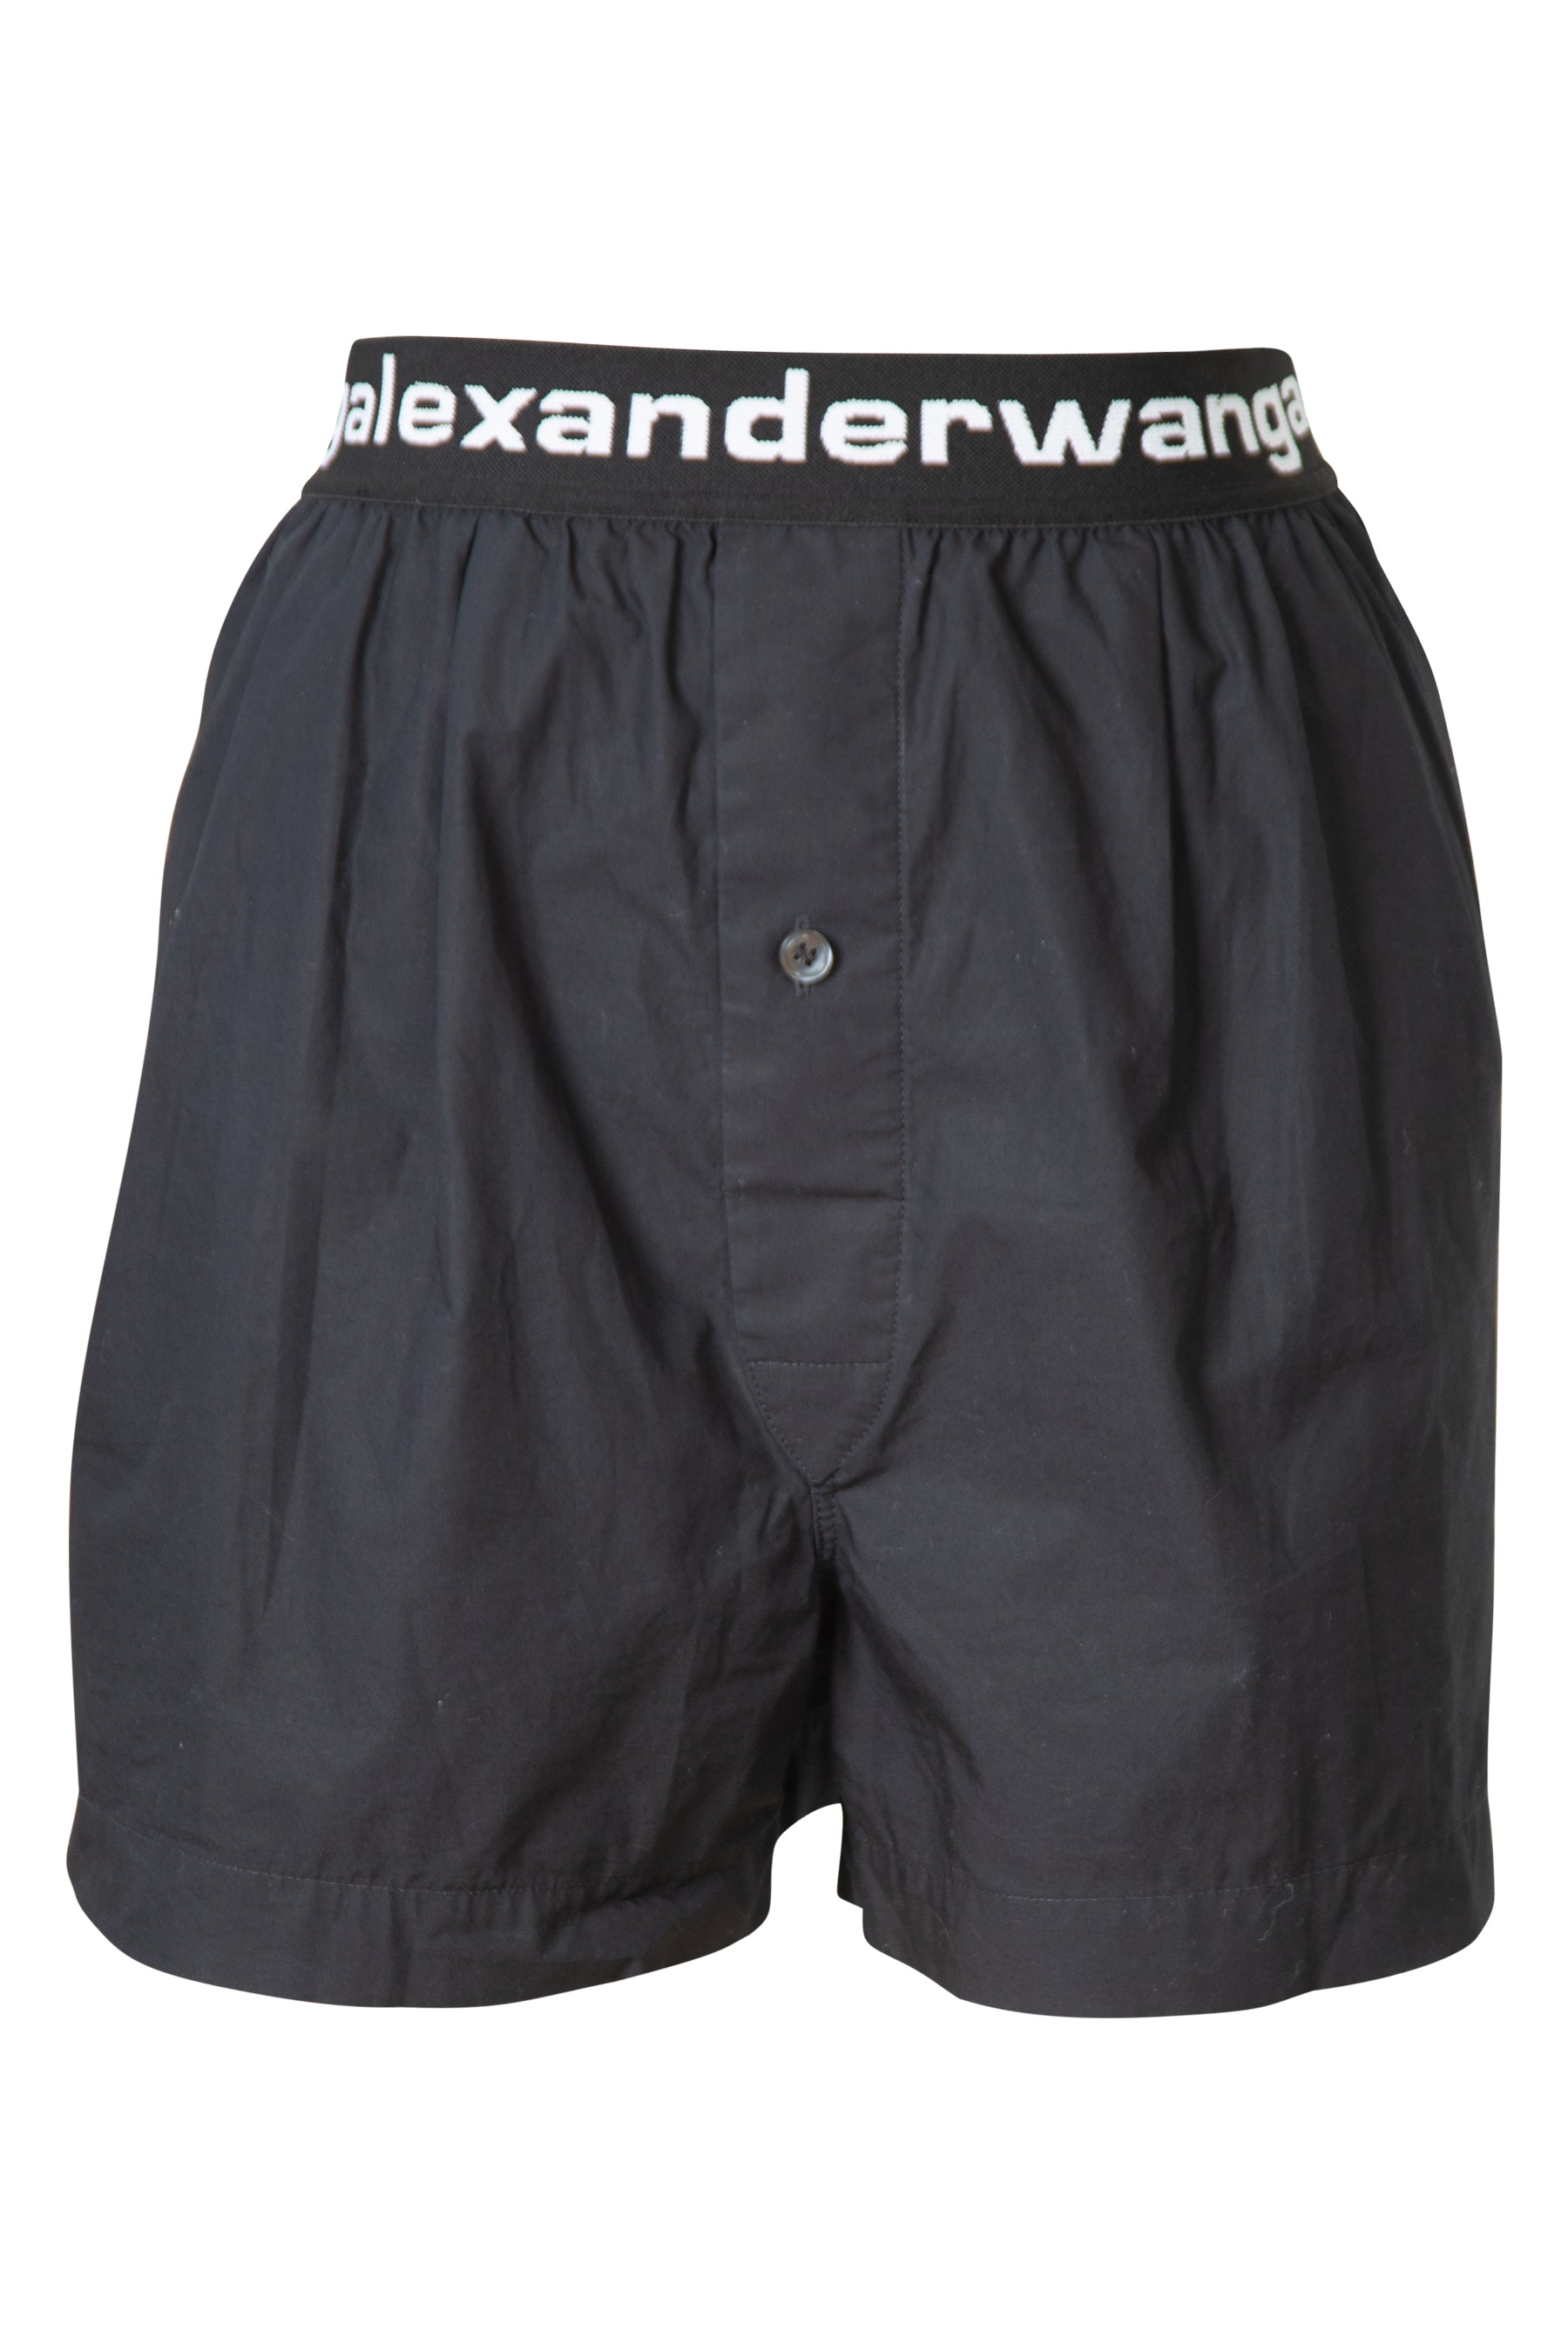 Alexander Wang Logo Waistband Shorts – Dora Maar